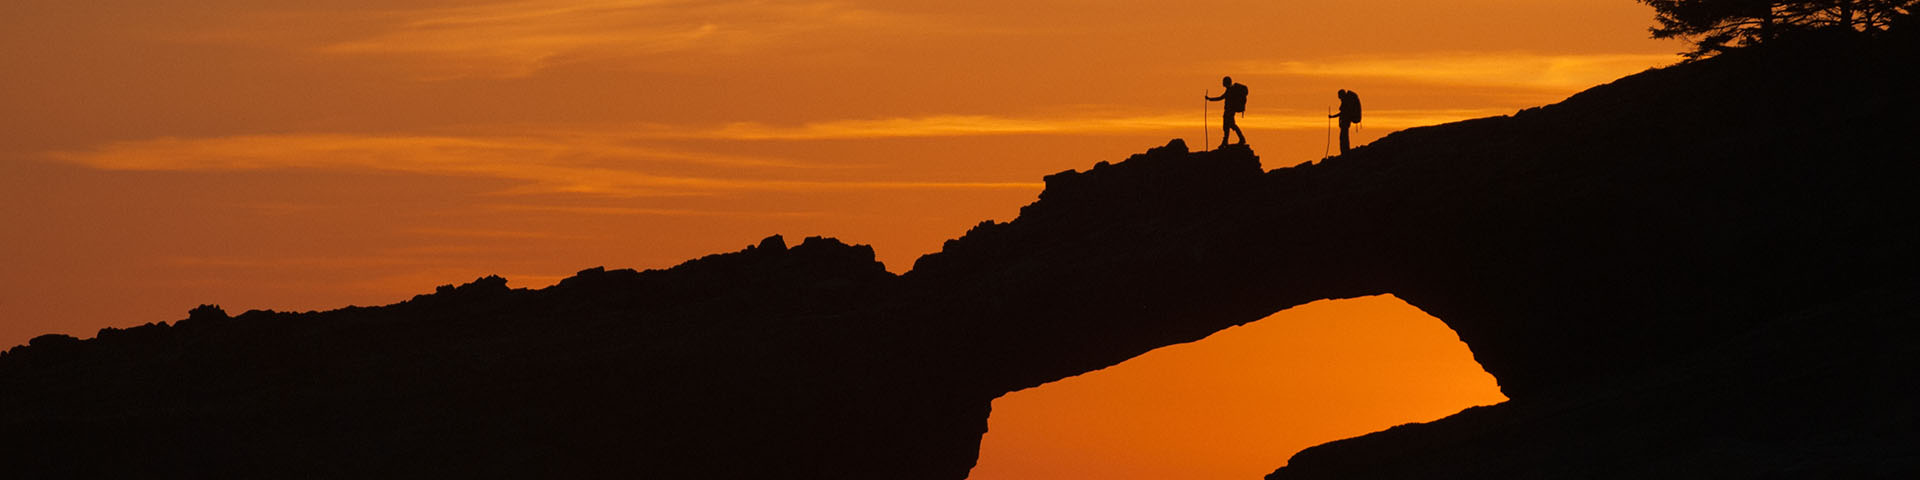 Silhouette de deux randonneurs avec sac à dos et bâtons de marche qui traversent un pont naturel. Un coucher de soleil orange remplit le ciel à l’arrière-plan.